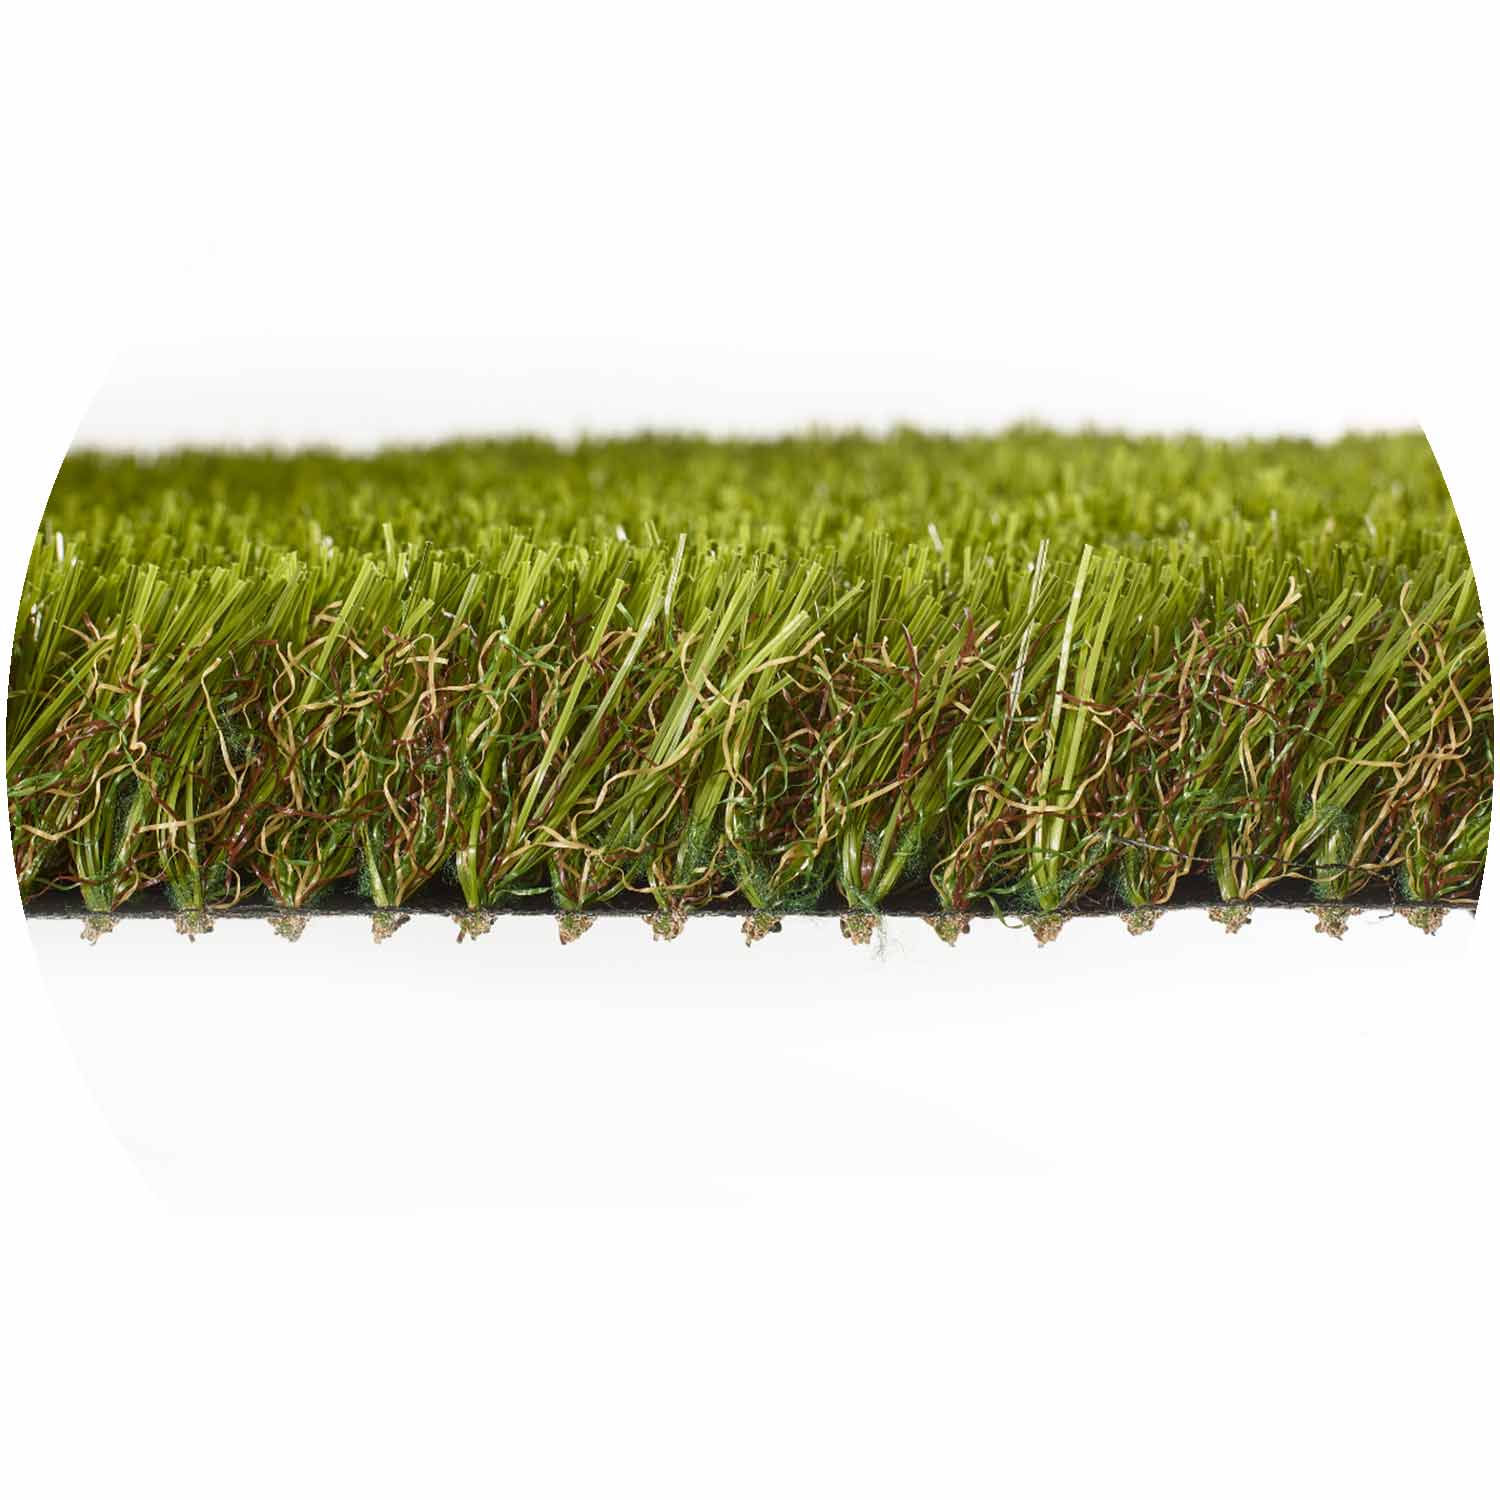 Mulsanne 40mm Pile Artificial Grass per mtr